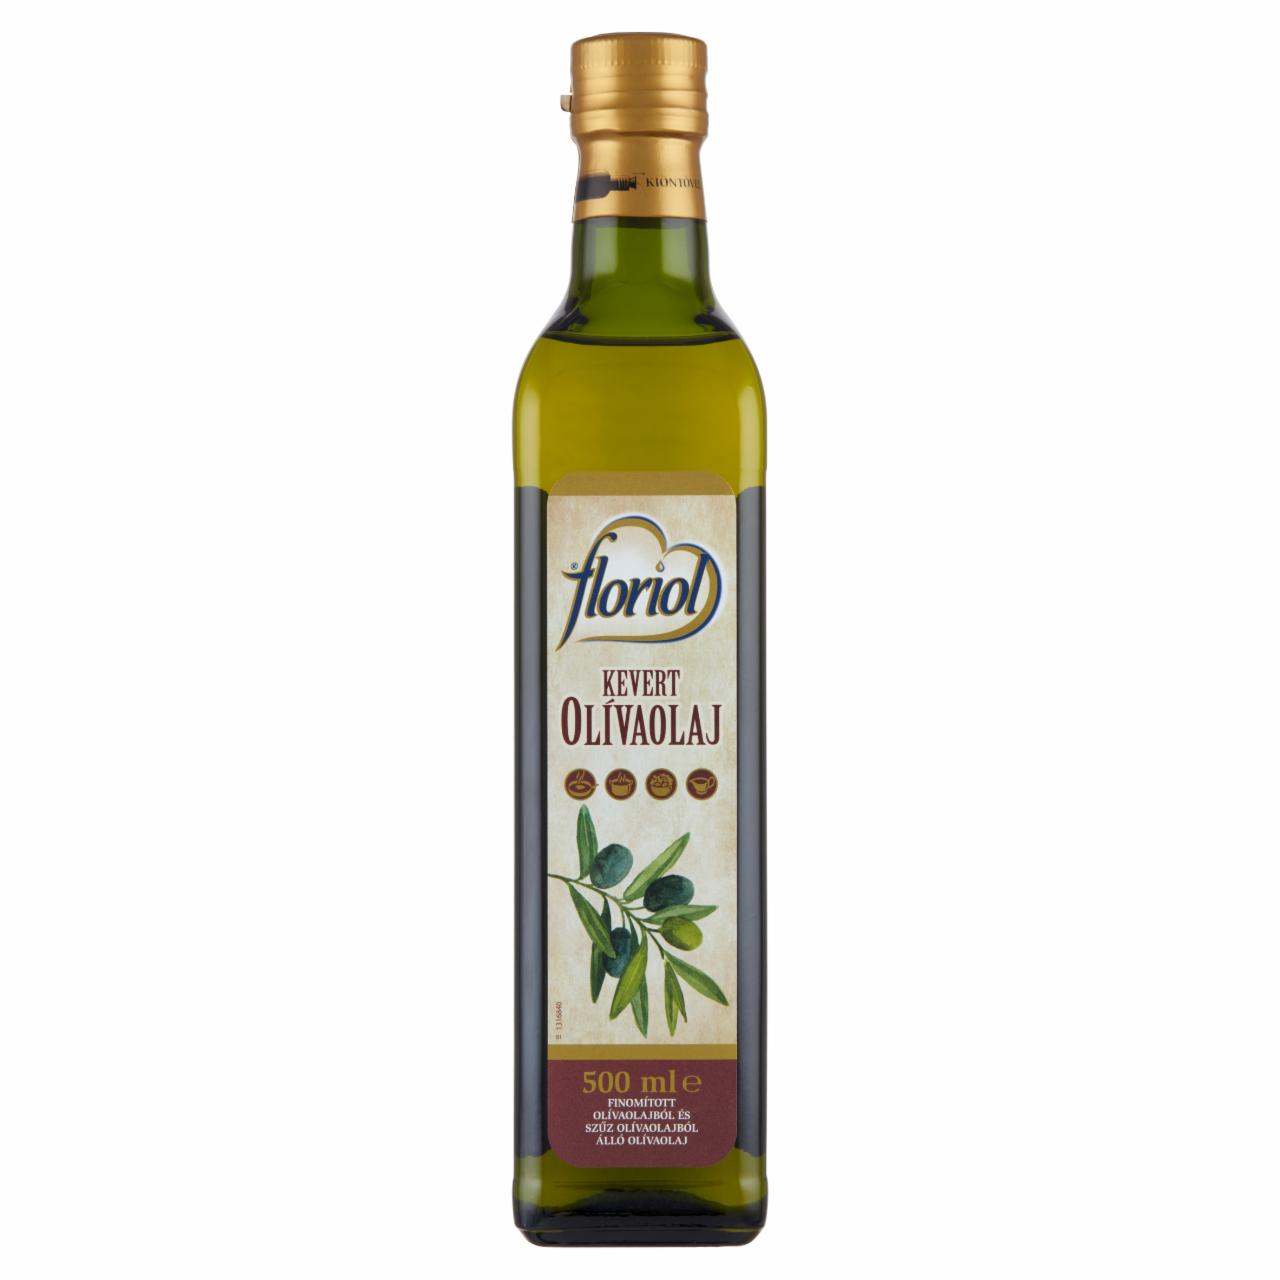 Képek - Floriol kevert olívaolaj 500 ml